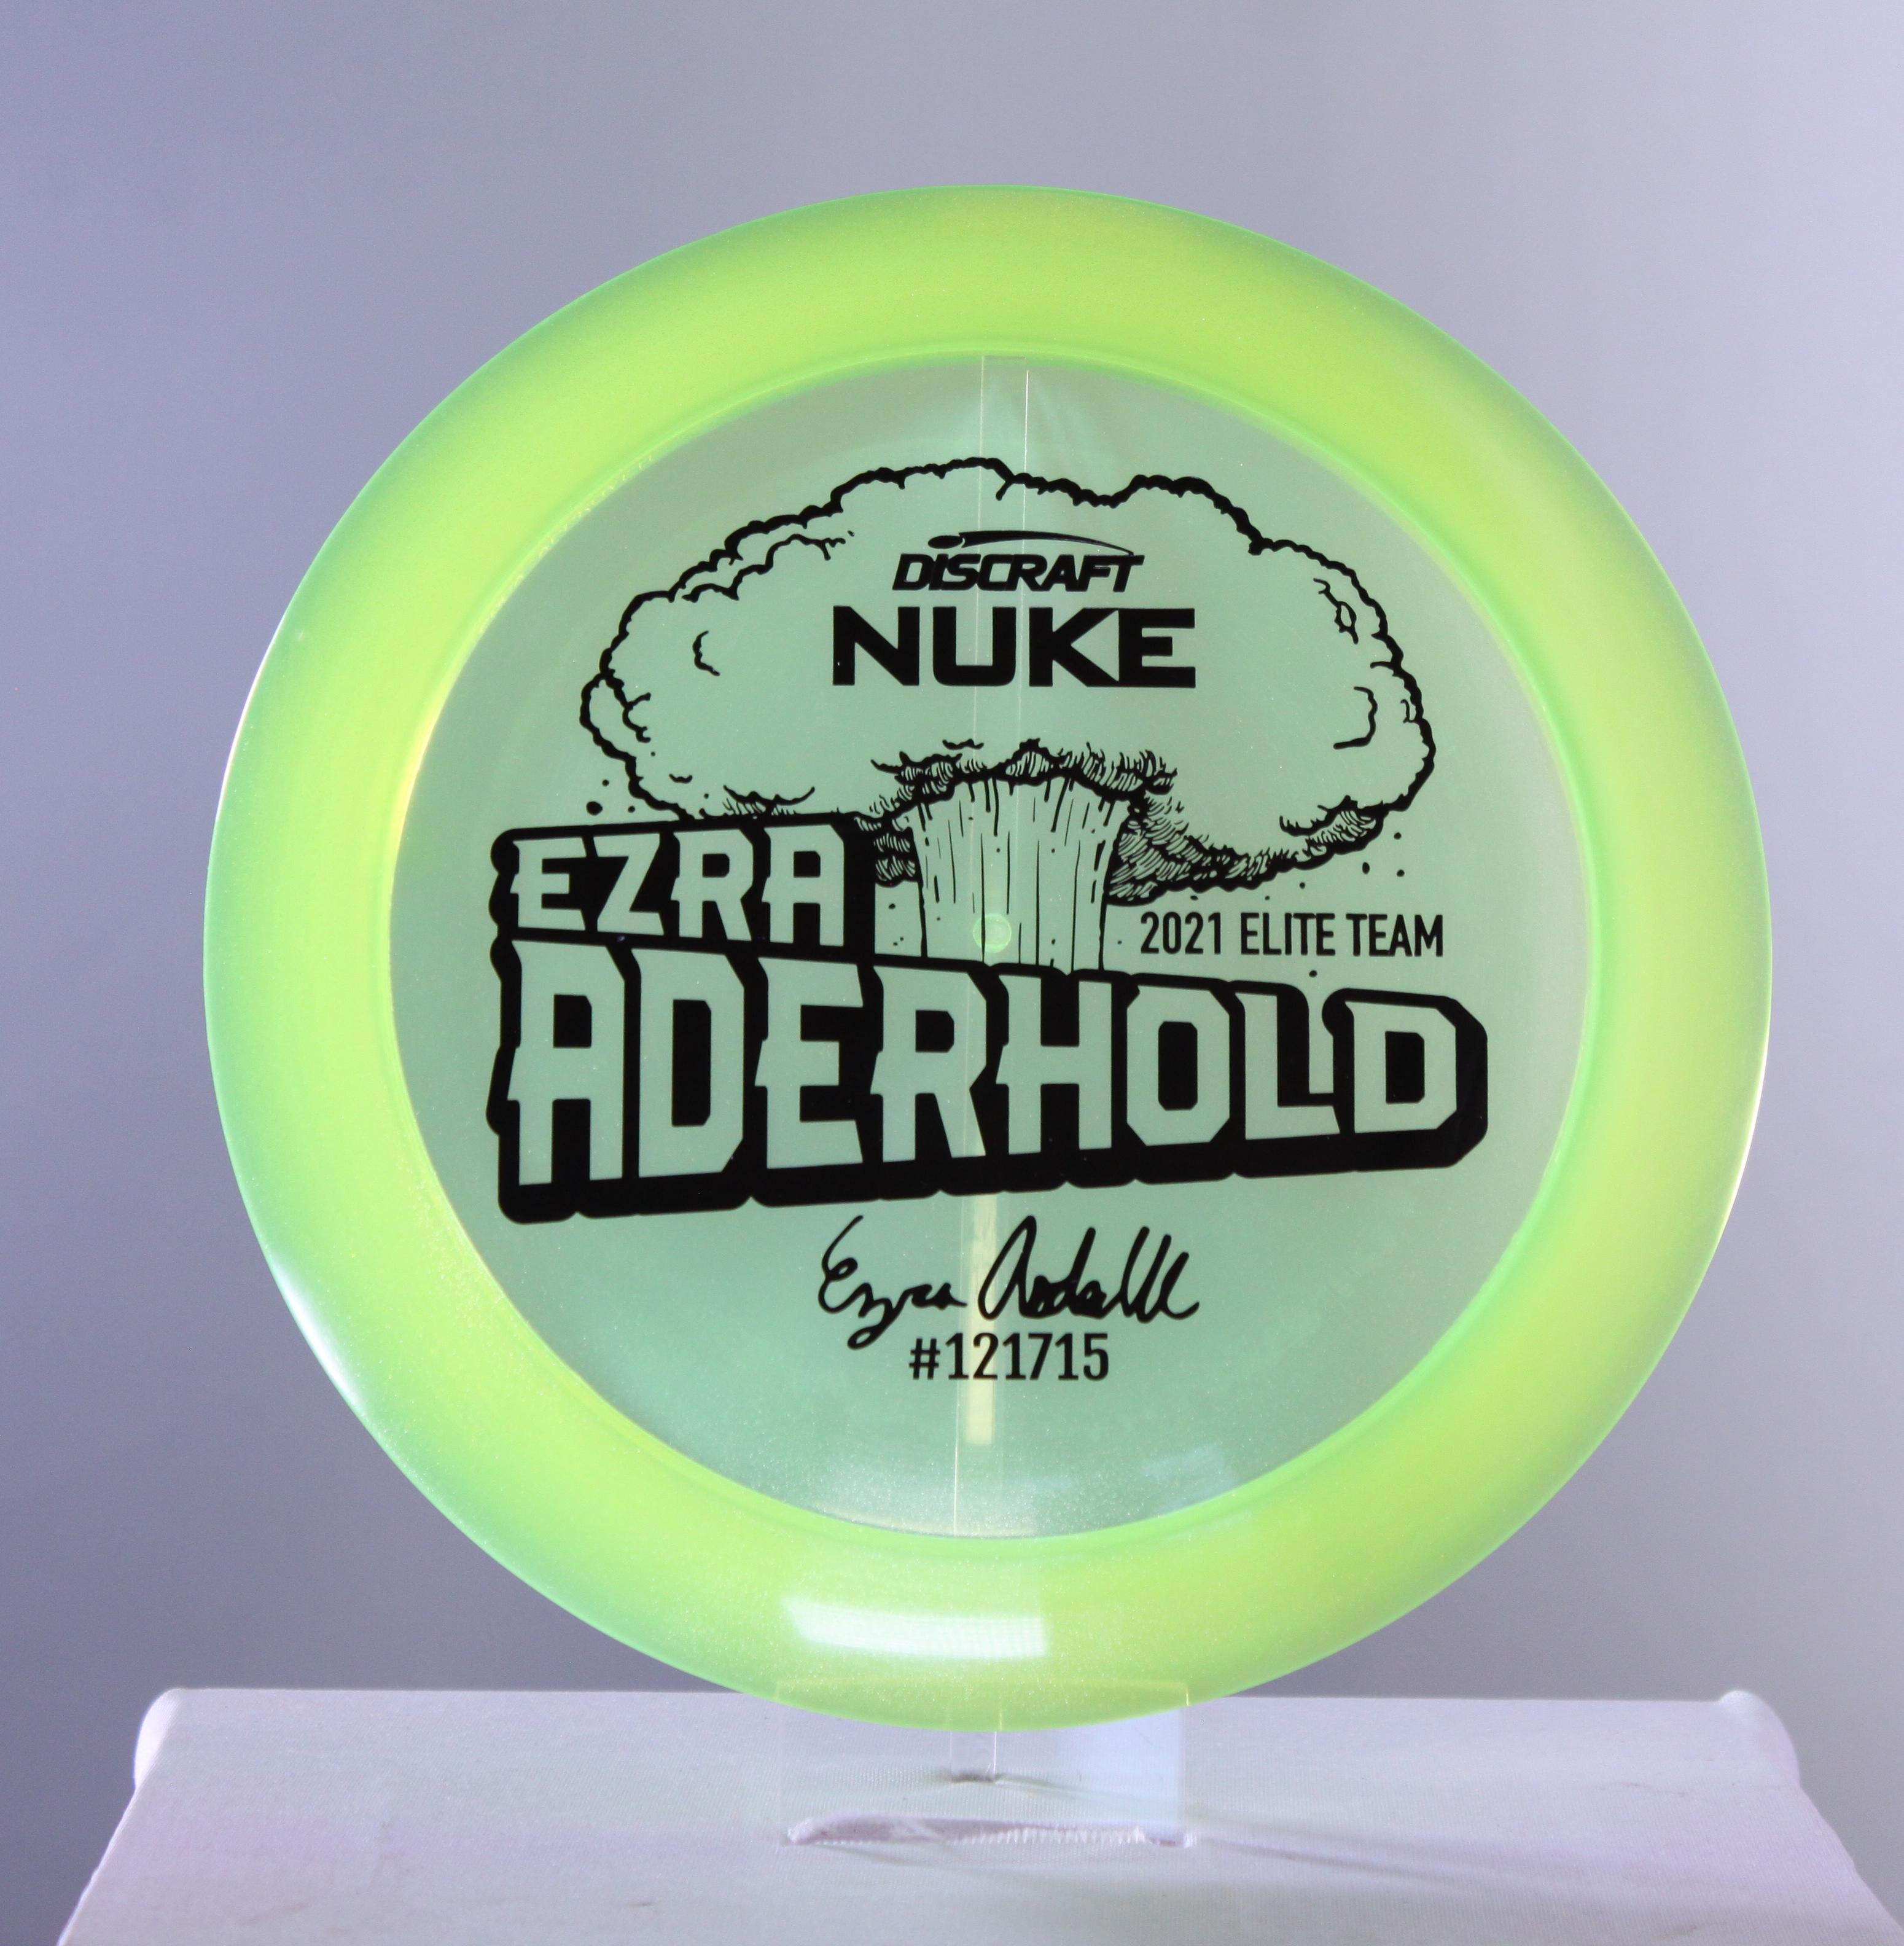 2021 Ezra Aderhold Elite Team CryZtal Sparkle Nuke